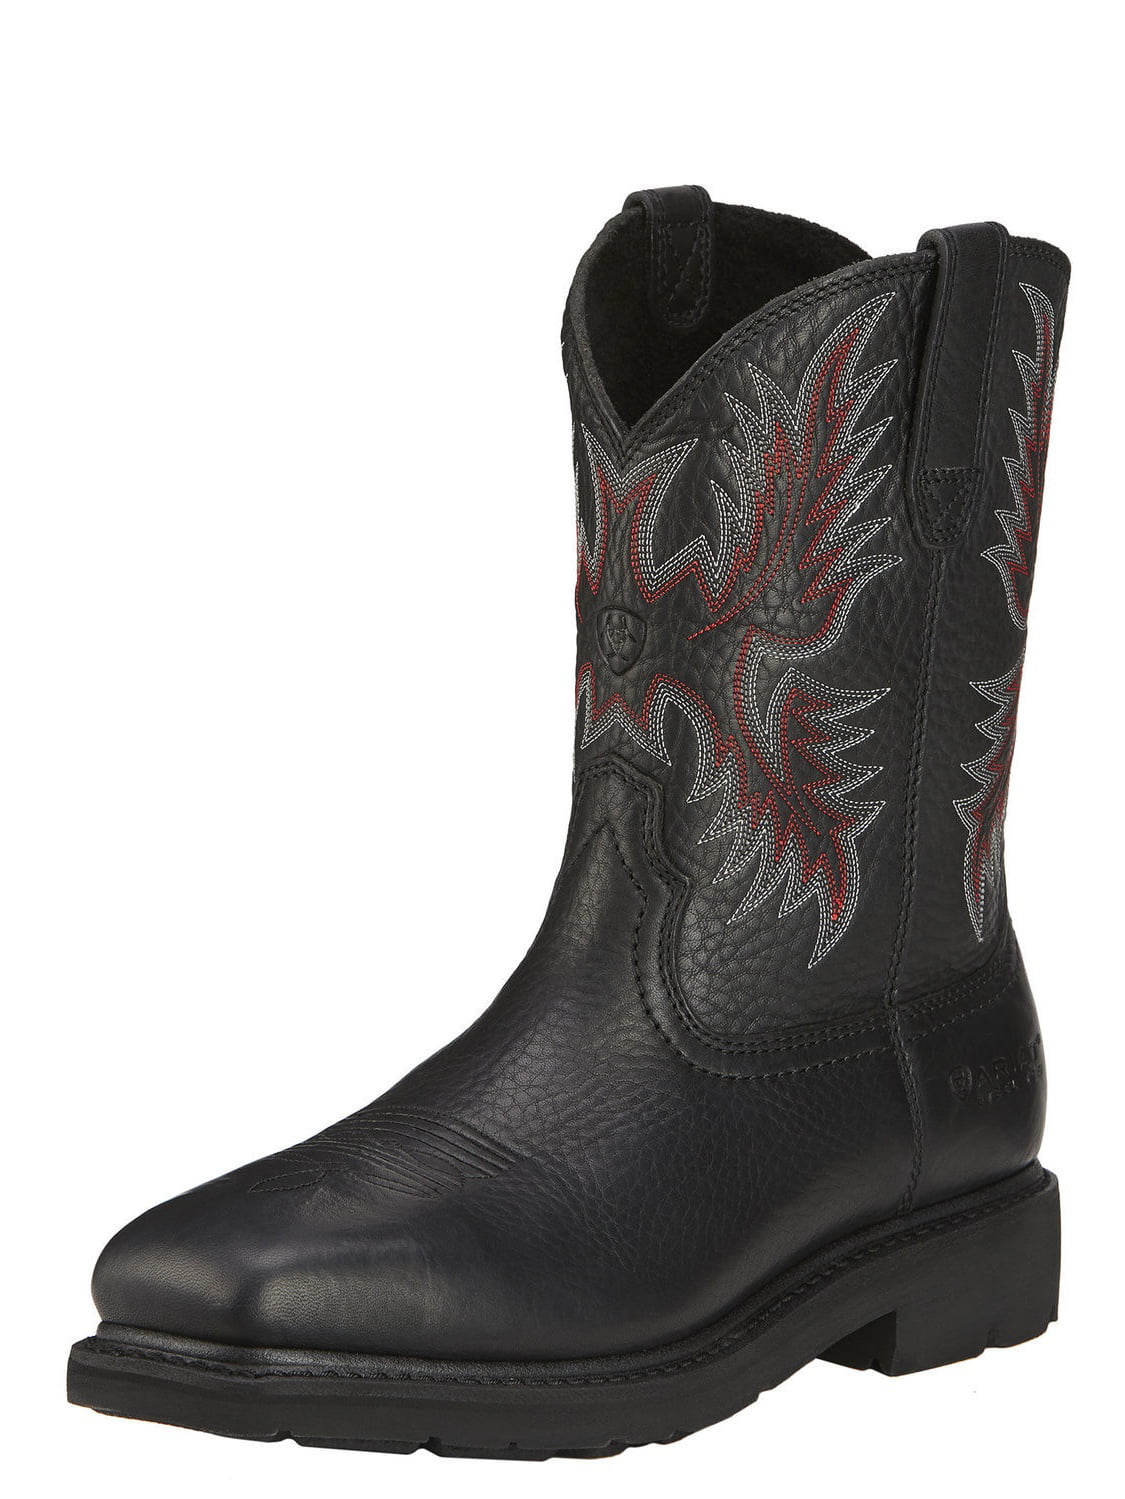 10016269 Ariat Men's Sierra WP Safety Boots - Black - Walmart.com